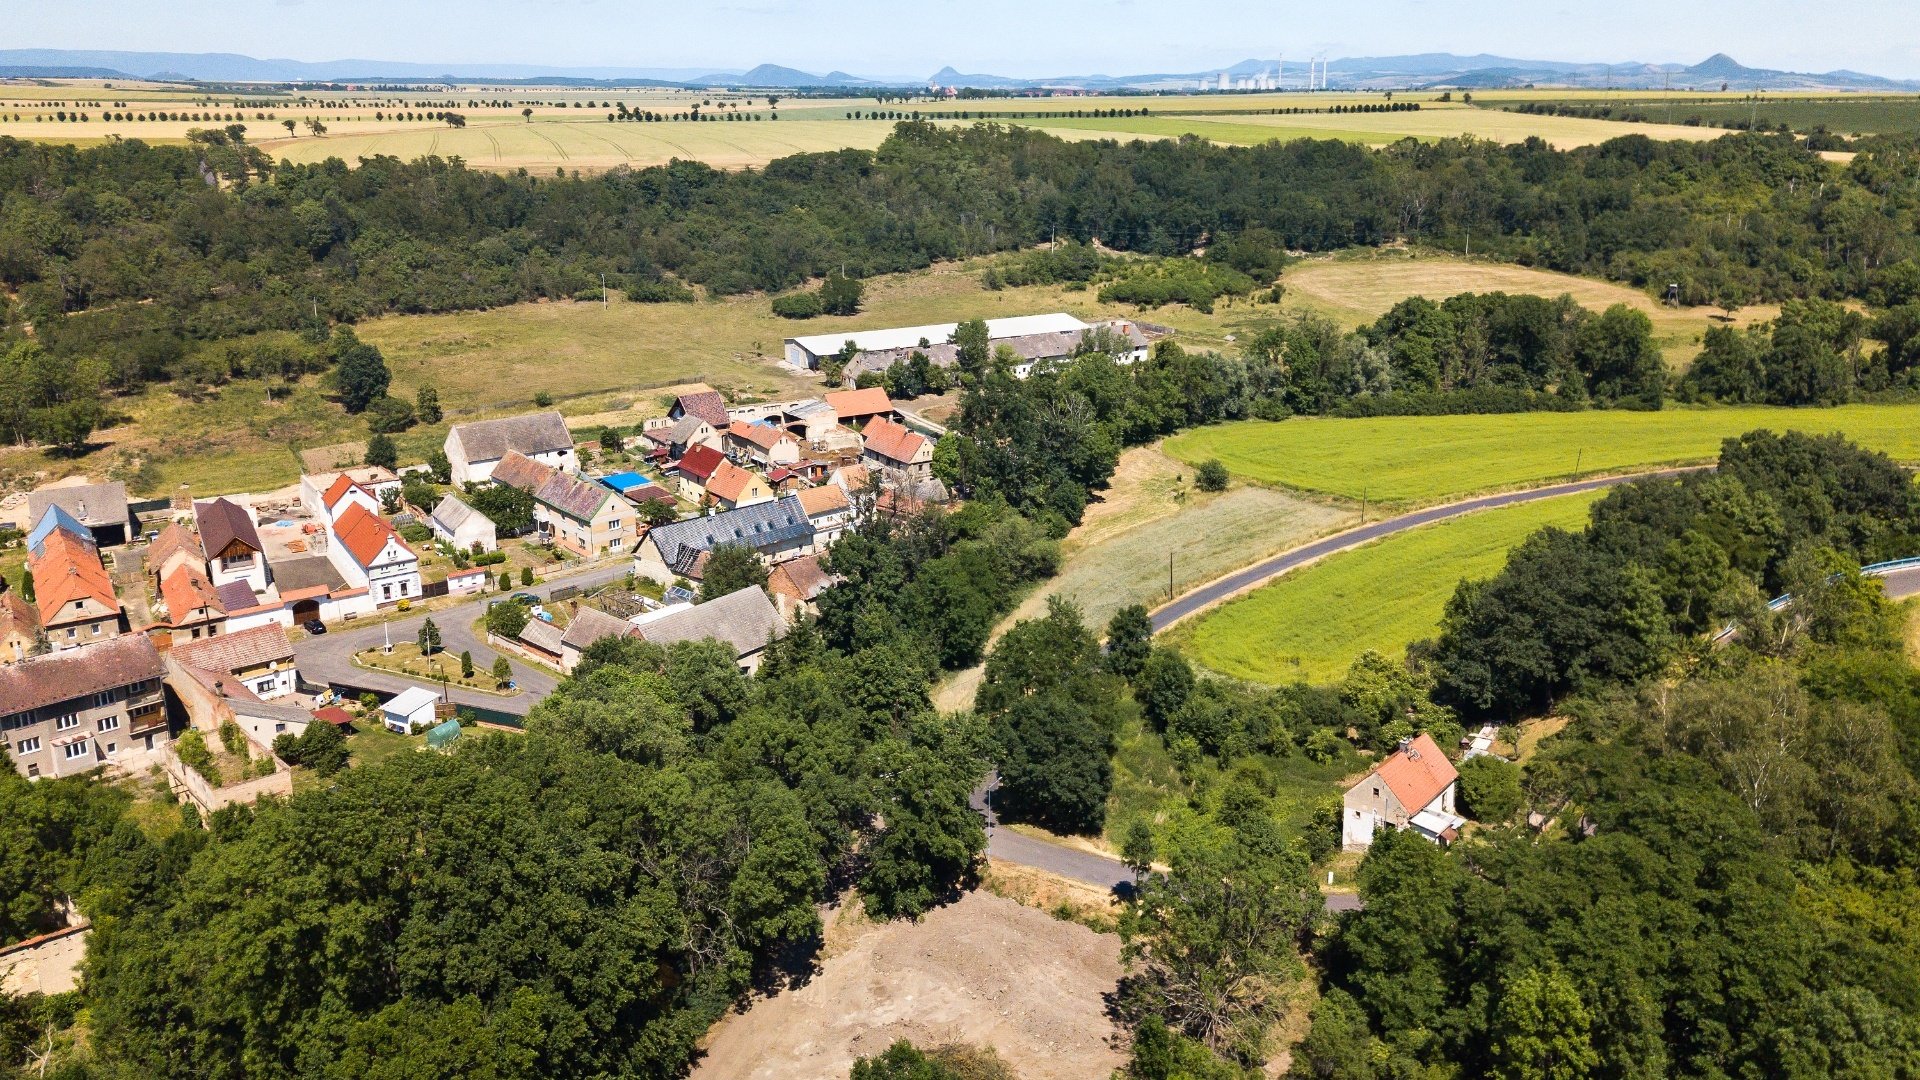 Prodej rodinného domu/zemědělské usedlosti, 564 m² s pozemkem 865 m², Bitozeves - Nehasice, okres Louny